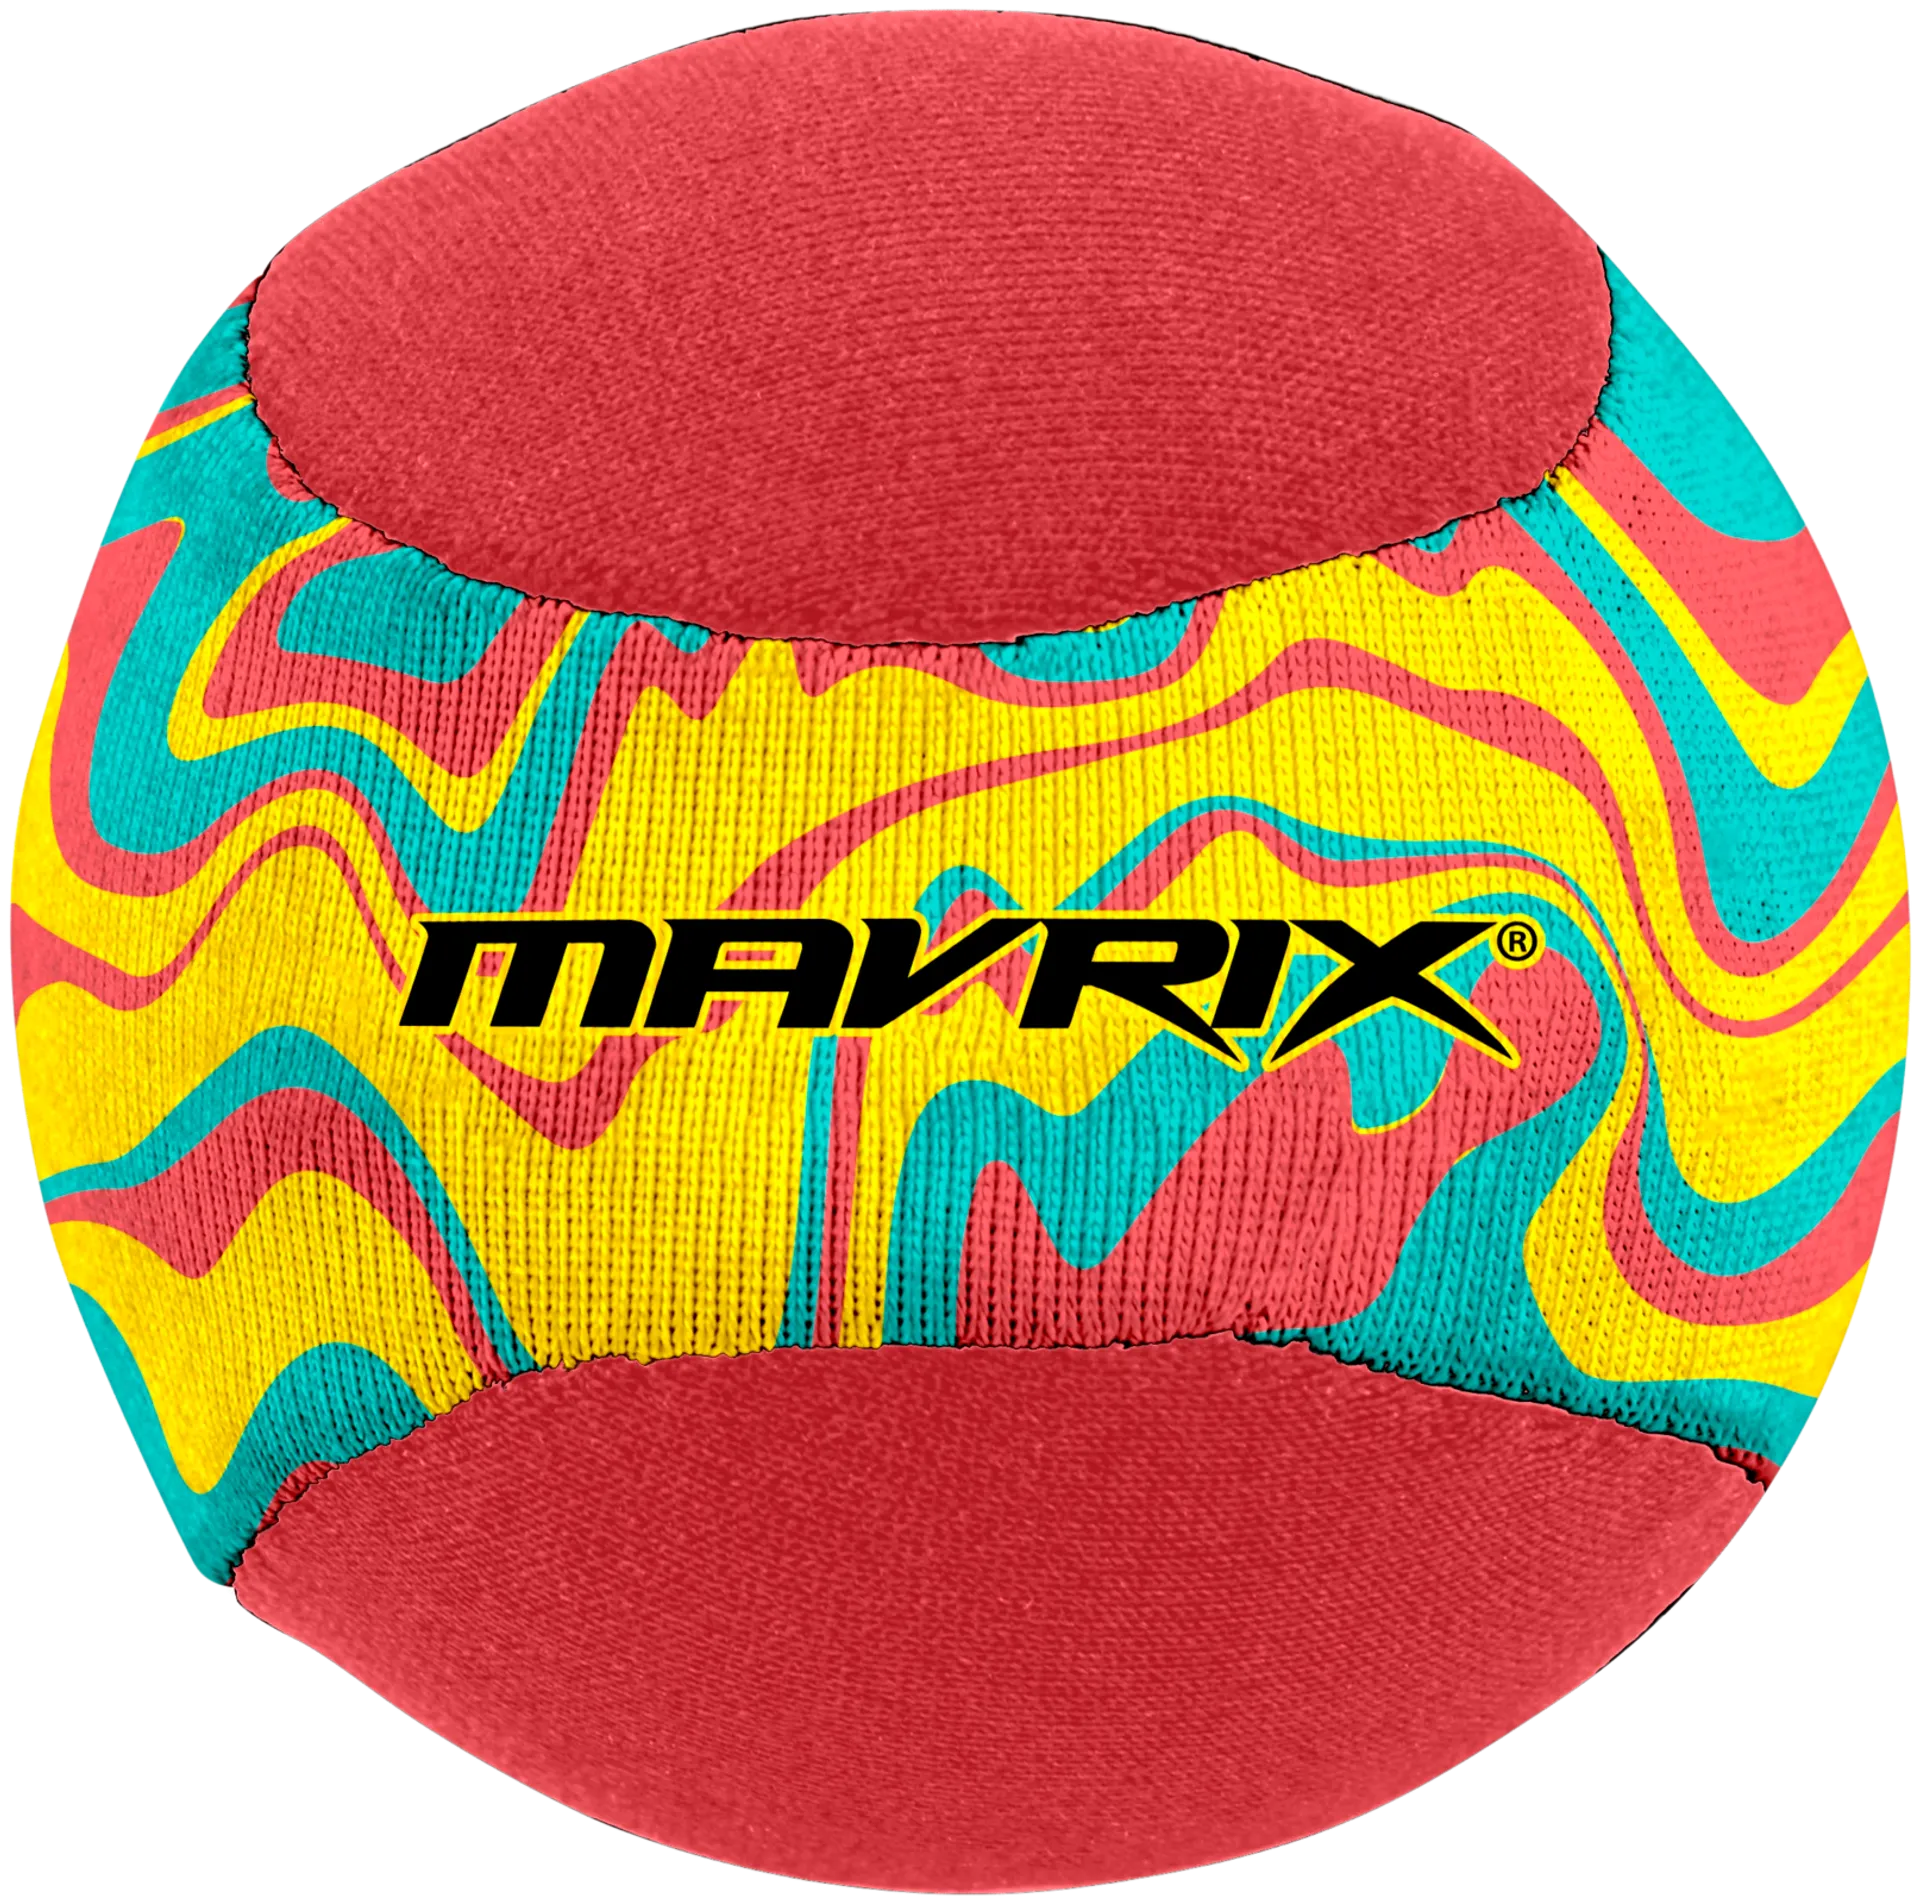 Mavrix Water Skim Ball -vesipallo - 5